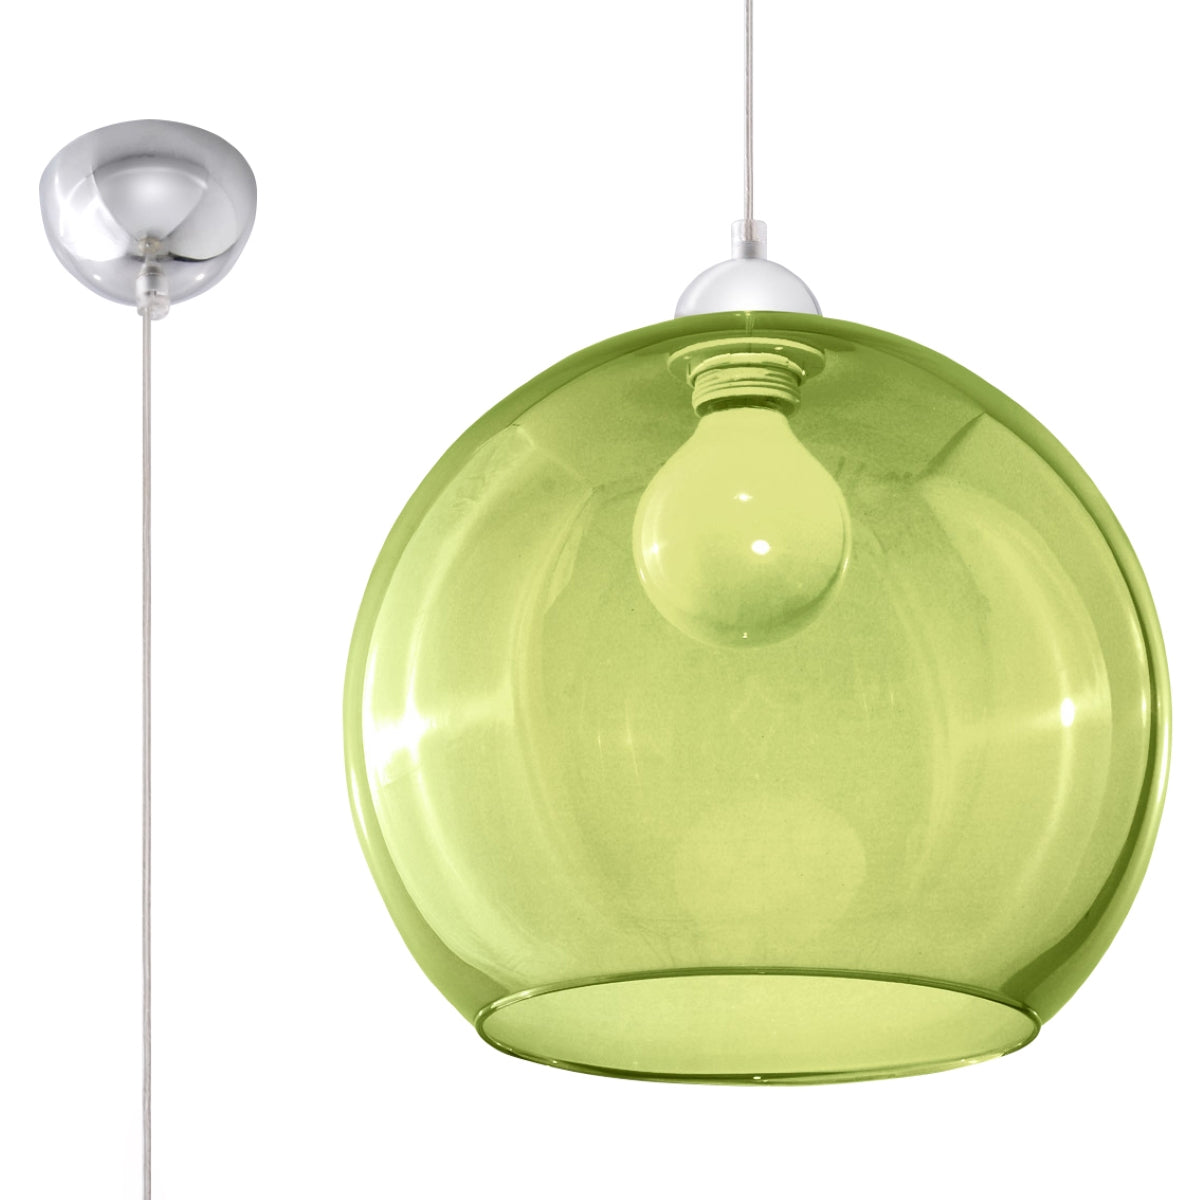 hanglamp-ball-groen